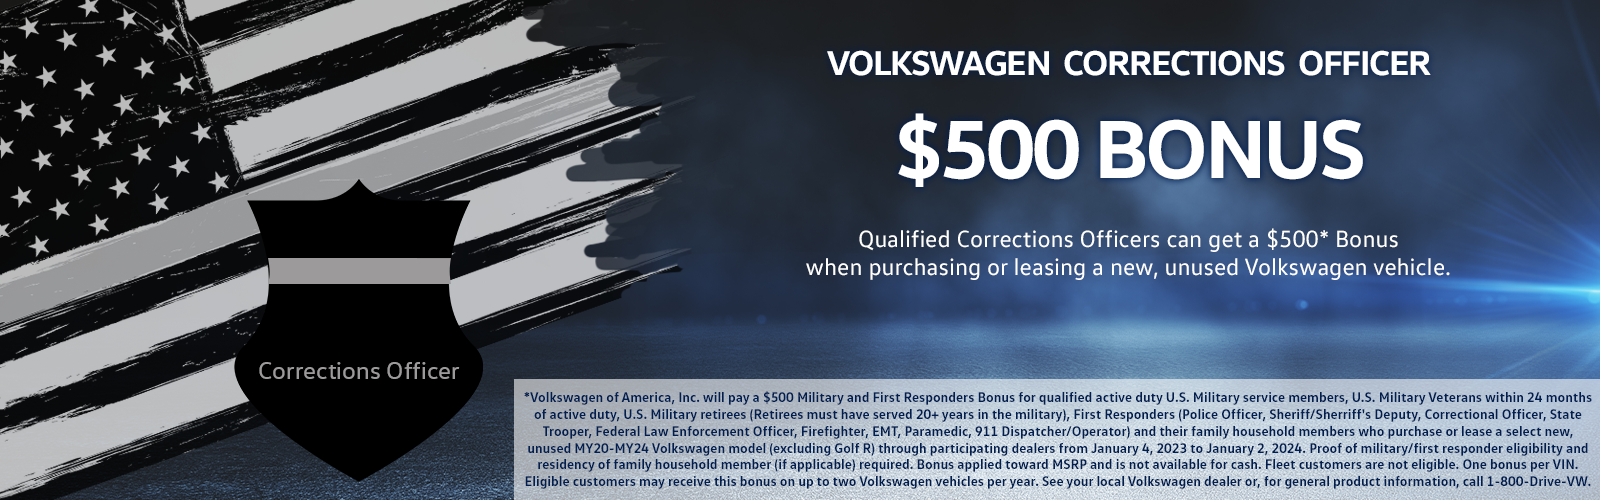 $500 Bonus for Volkswagen Correctional Officers | Romeo Volkswagen of Kingston in Kingston NY